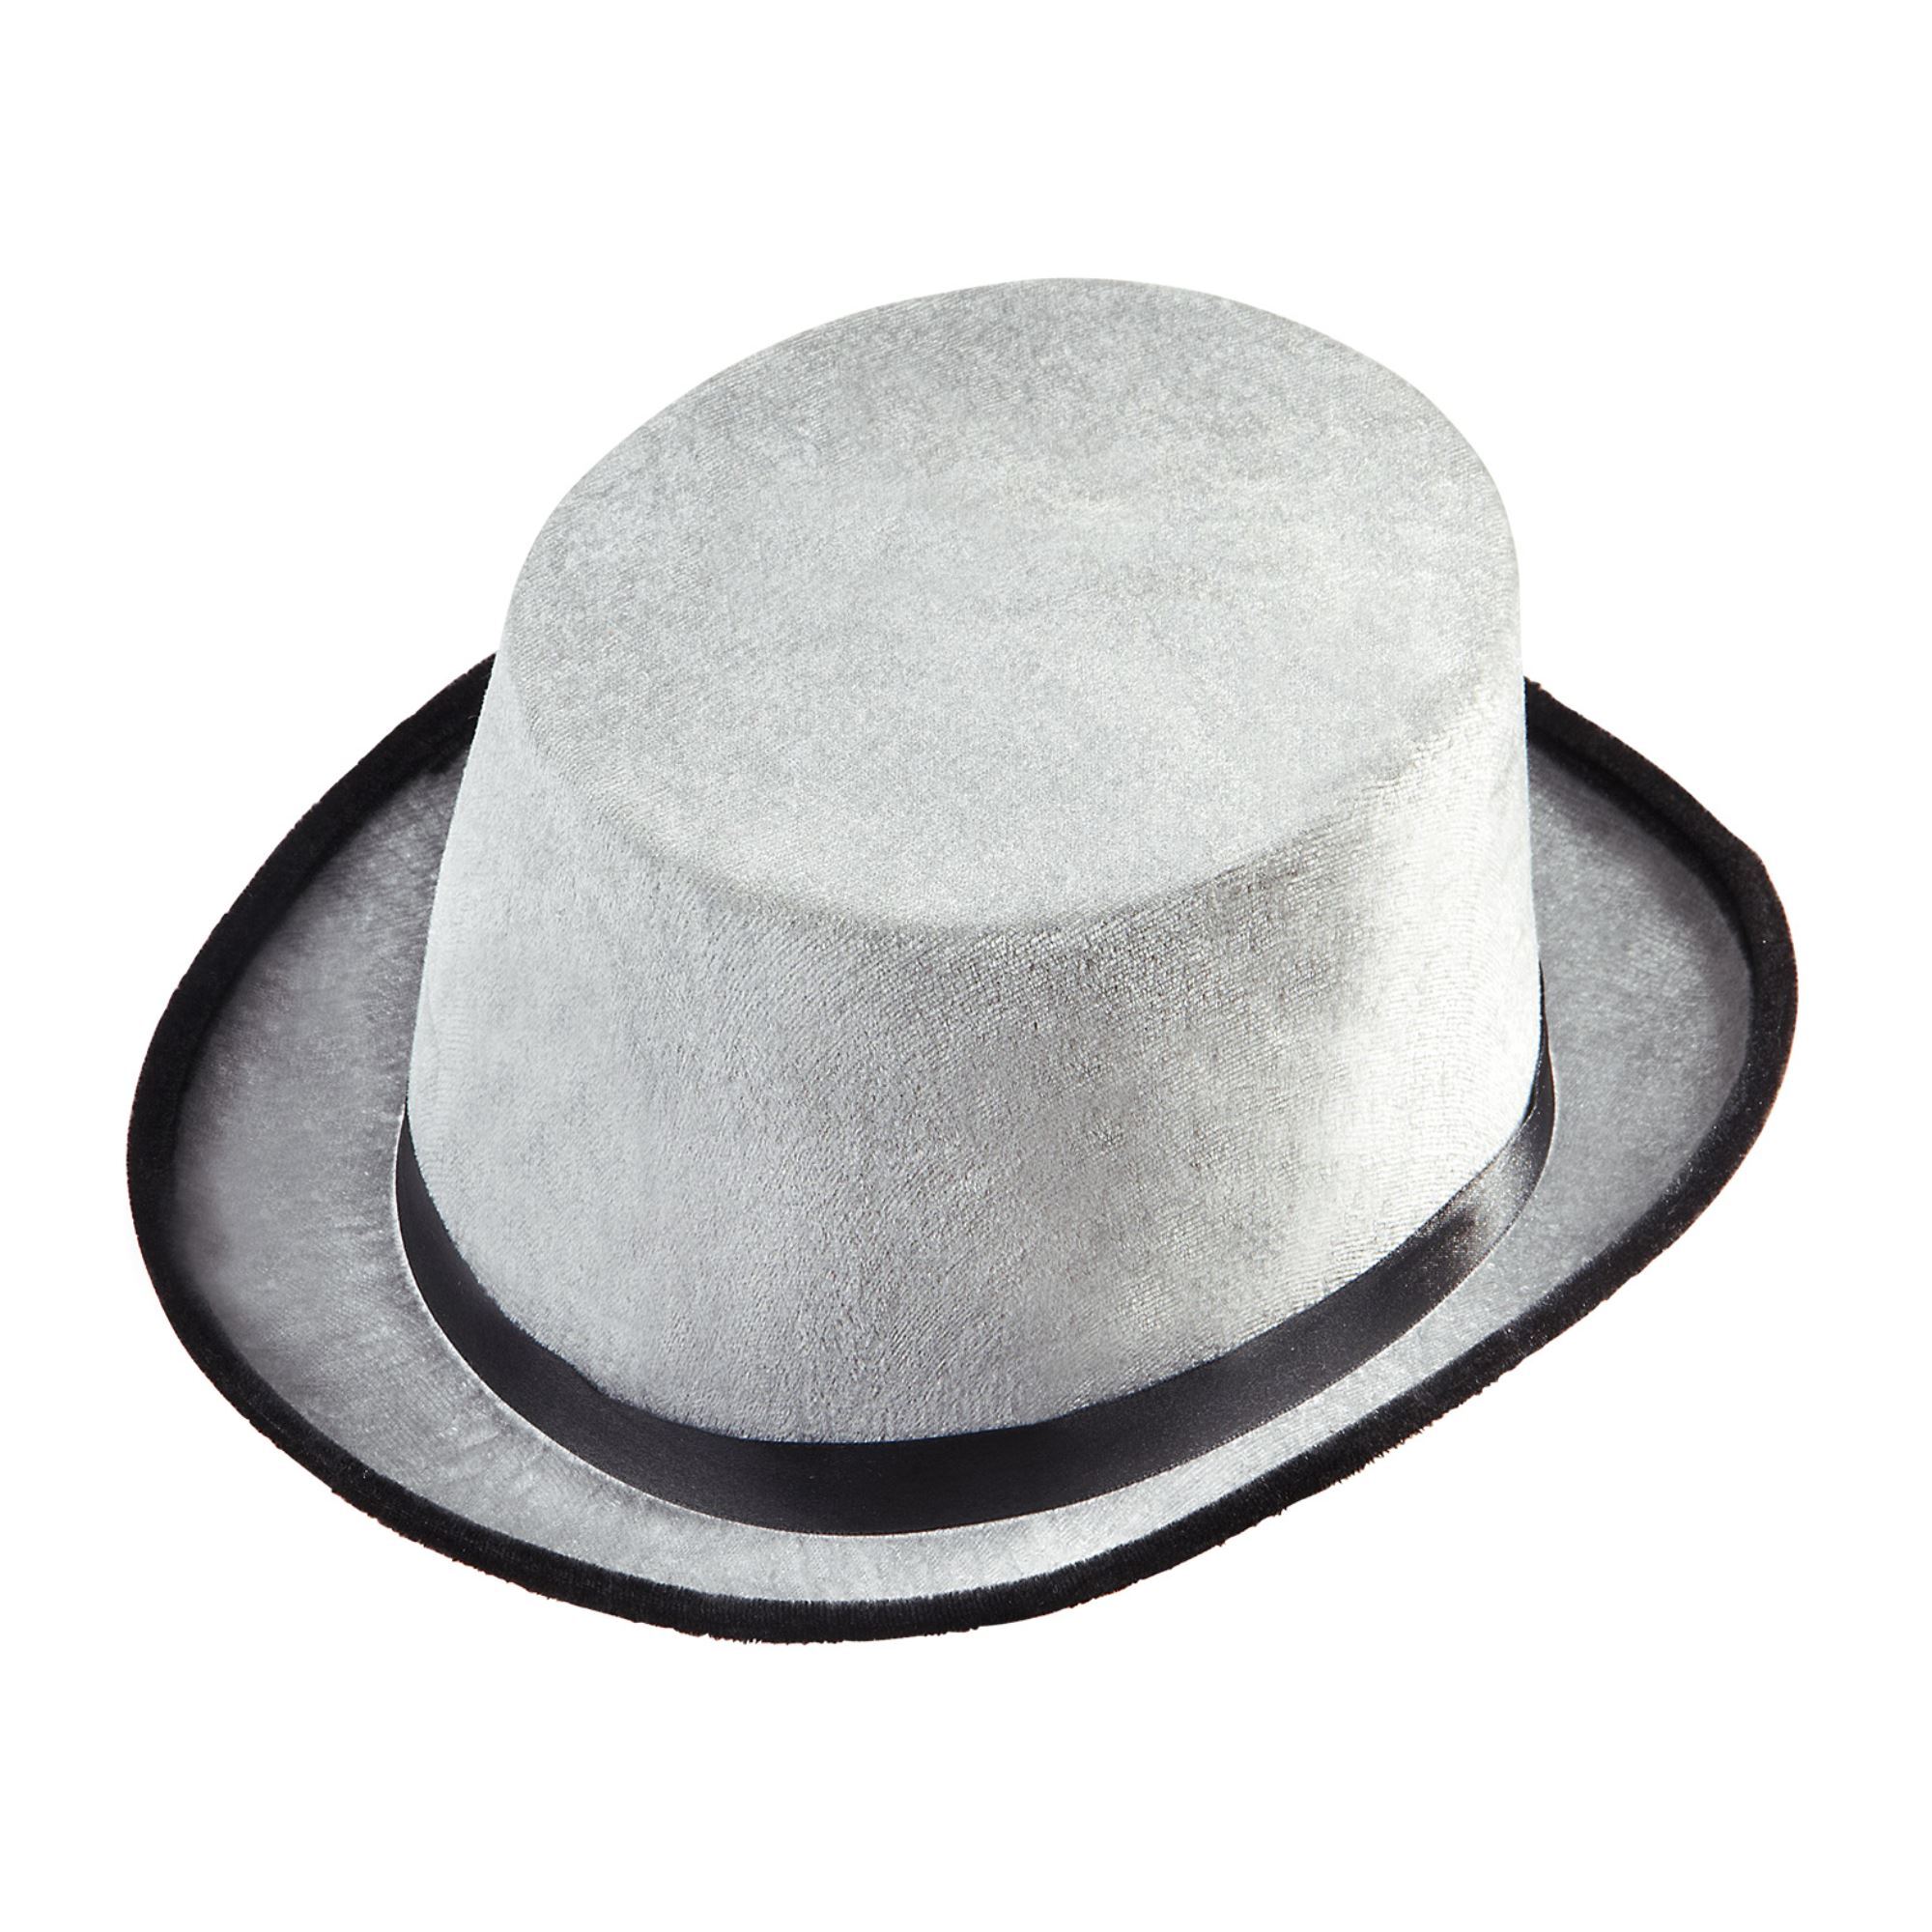 Stijlvolle Hoge hoed fluweel grijs